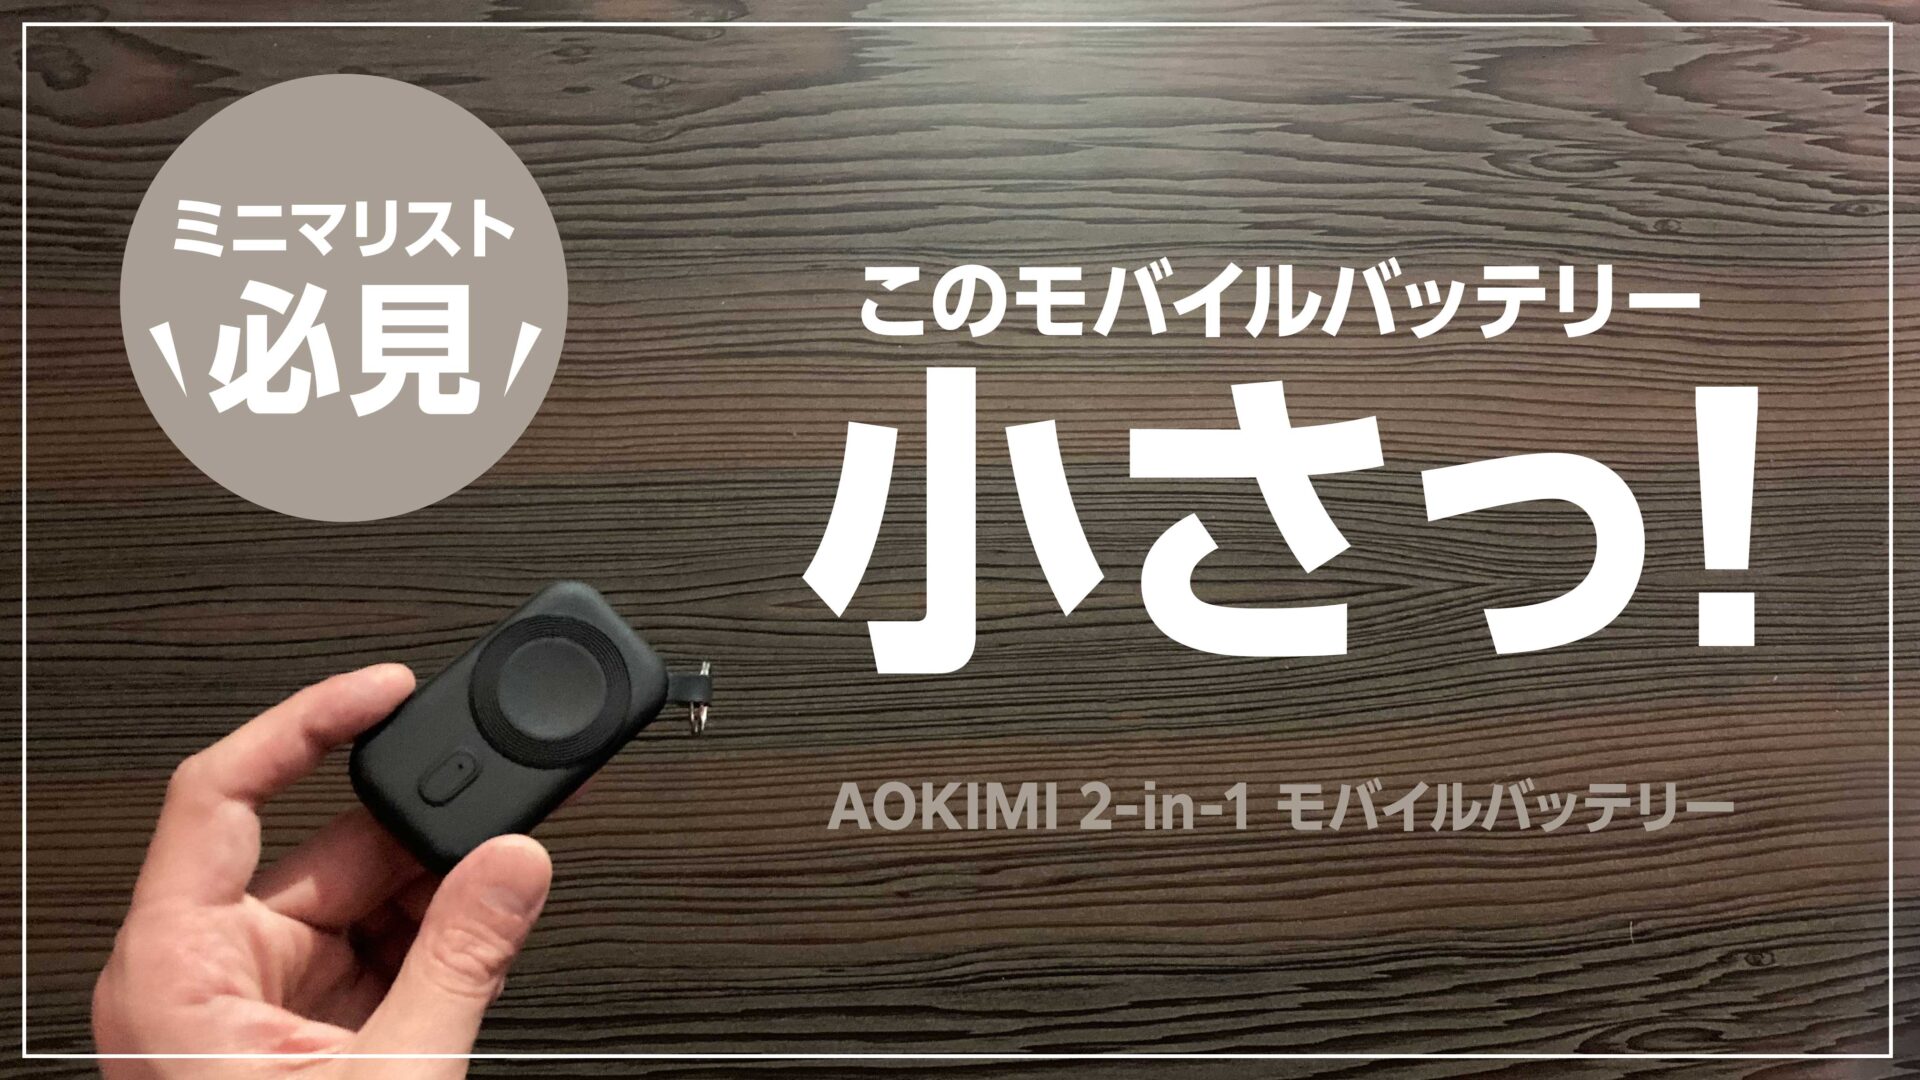 ミニマリスト向けの小型モバイルバッテリー AOKIMI2-in-1をレビュー